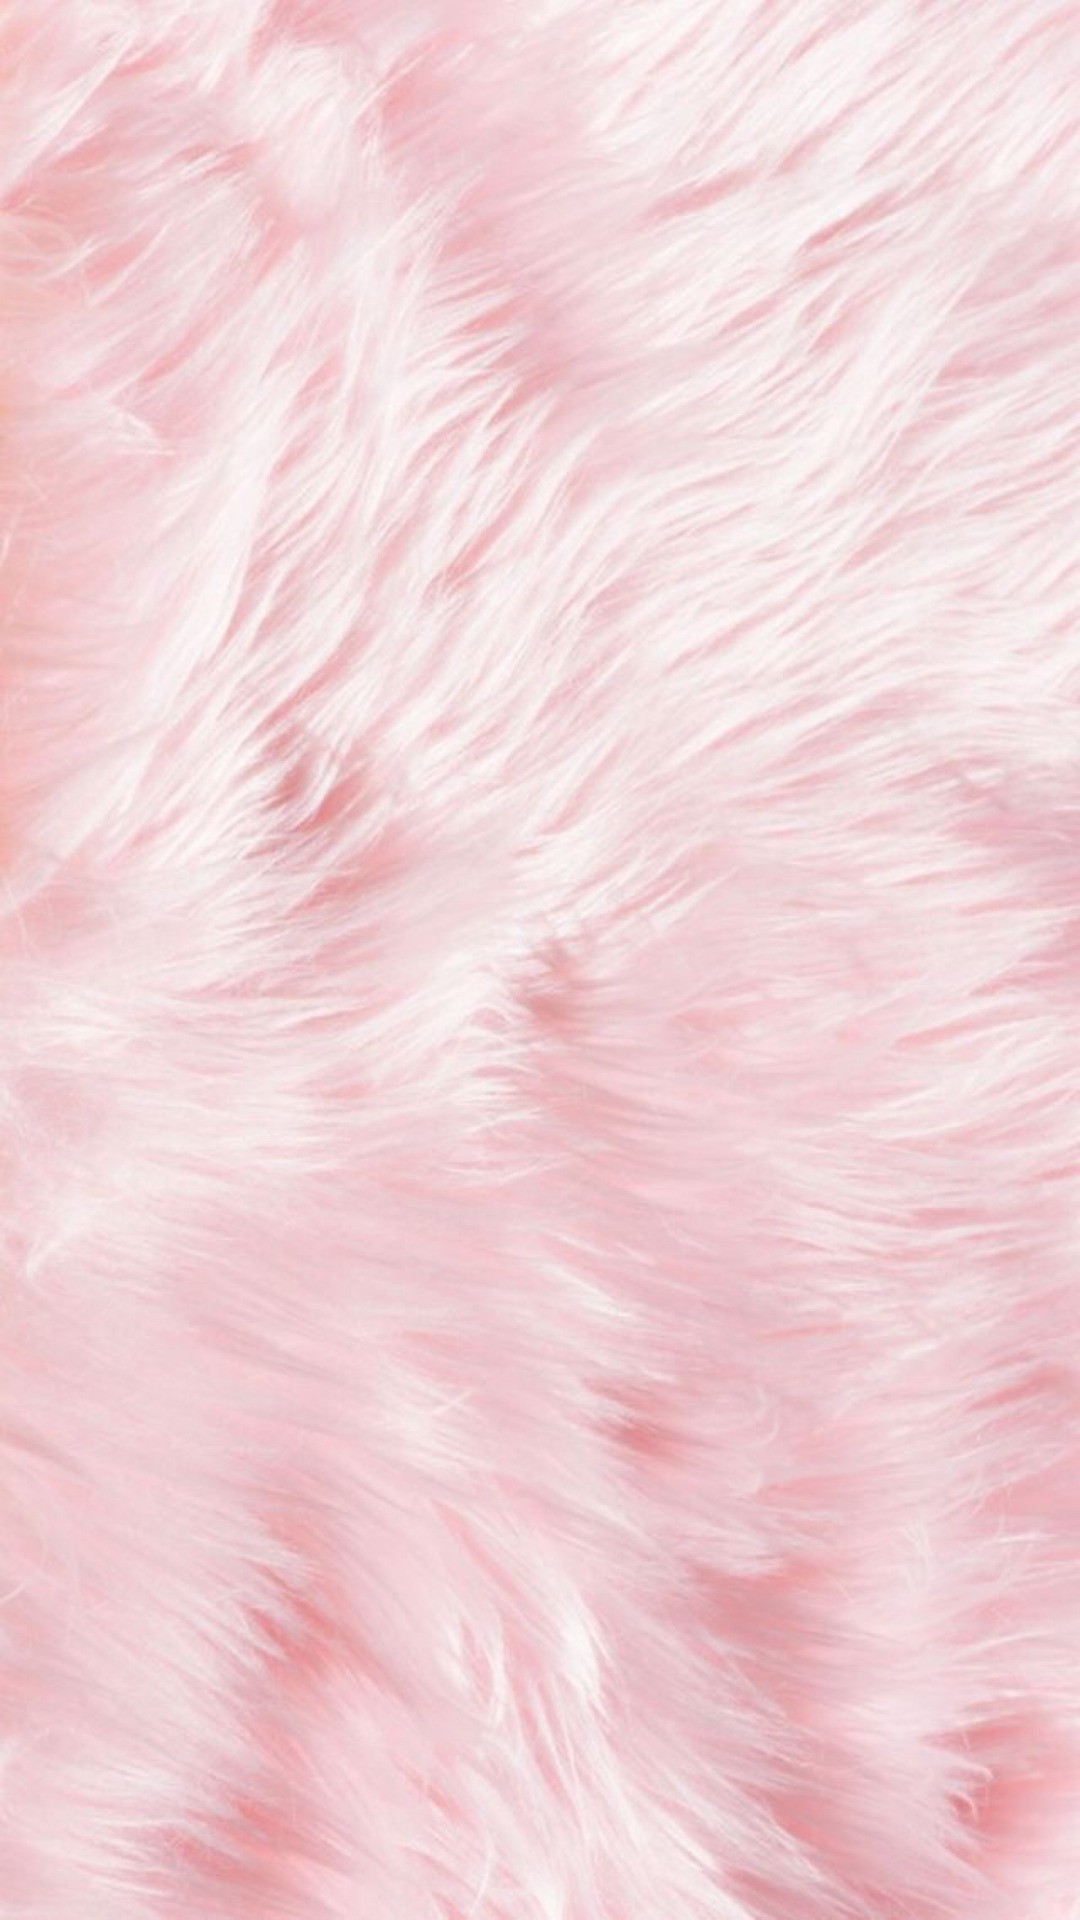 WallpaperDog cung cấp những hình nền màu hồng nhạt tuyệt đẹp, phù hợp để trang trí cho màn hình điện thoại hay máy tính của bạn. Hãy truy cập ngay trang web này và tận hưởng những hình ảnh tuyệt đẹp với màu hồng nhạt dịu dàng và thanh lịch.